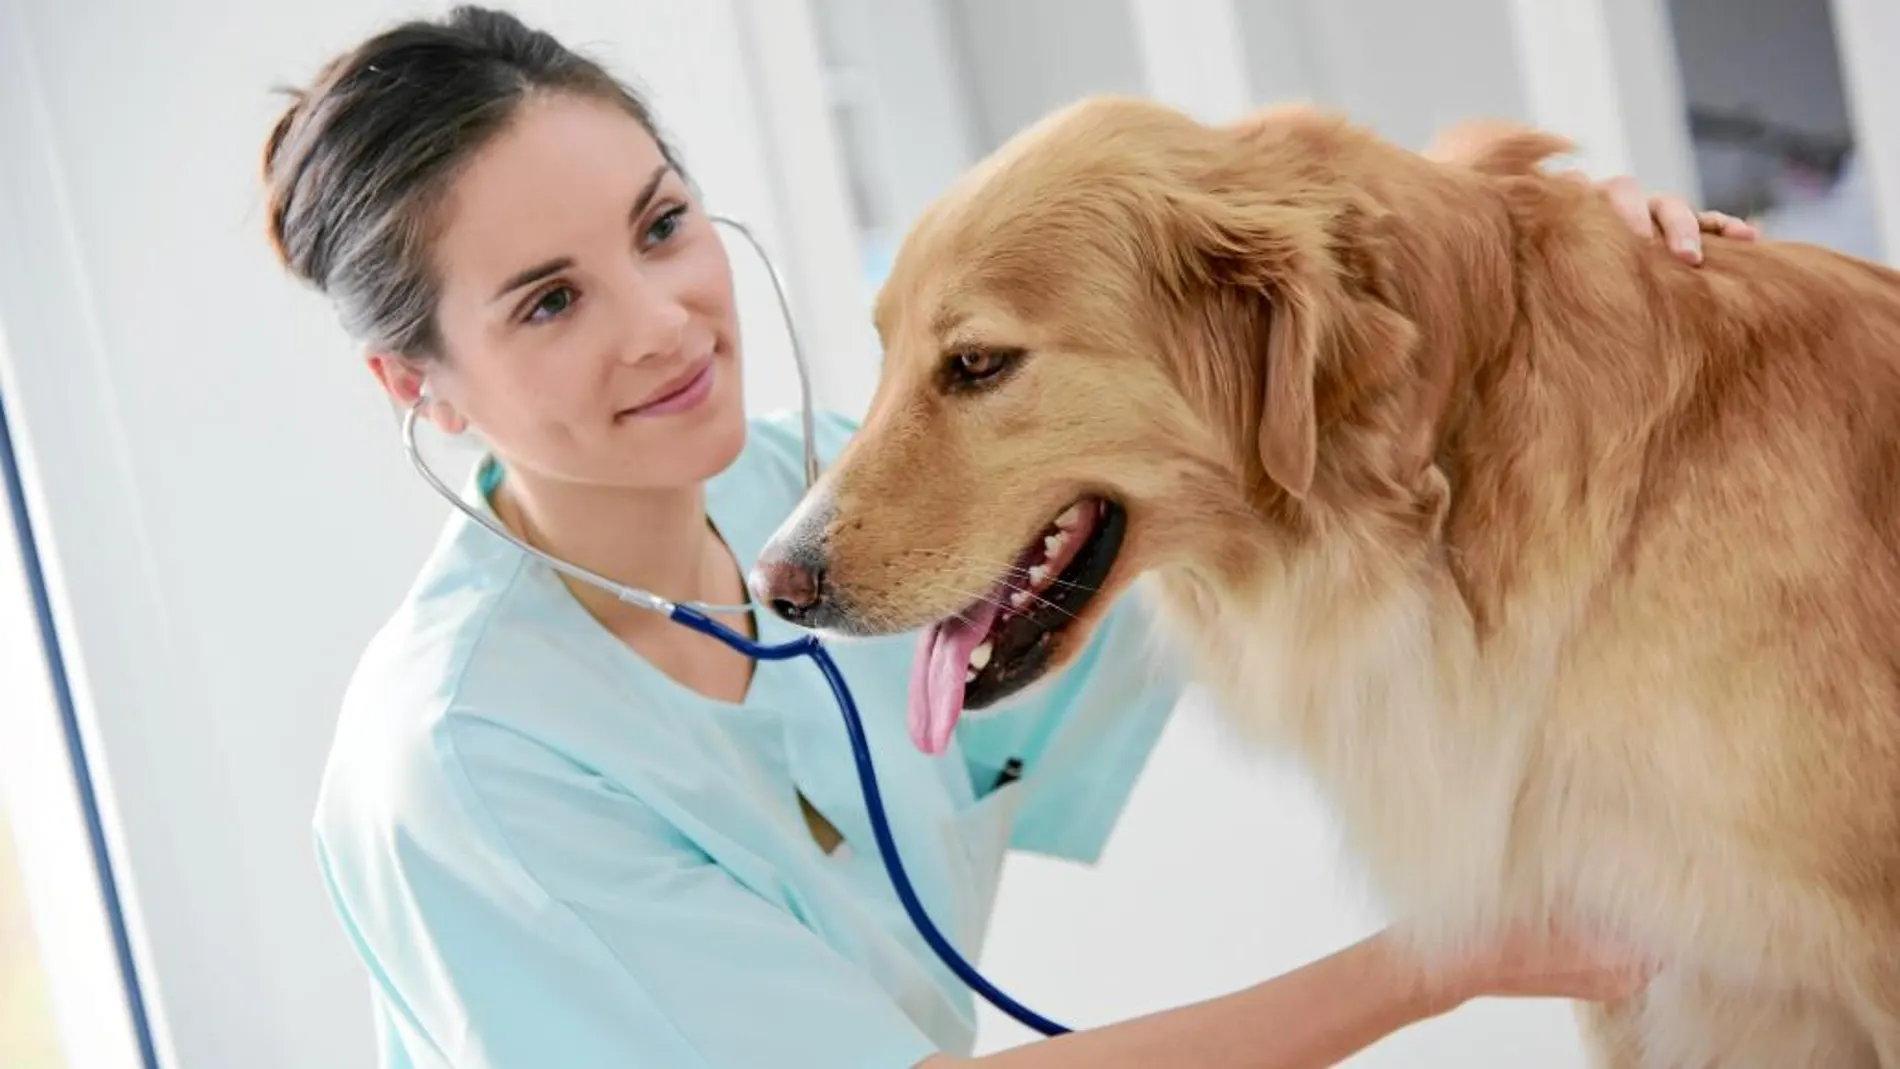 El cuidado integral de las mascotas se ha convertido en un importante mercado para las aseguradoras